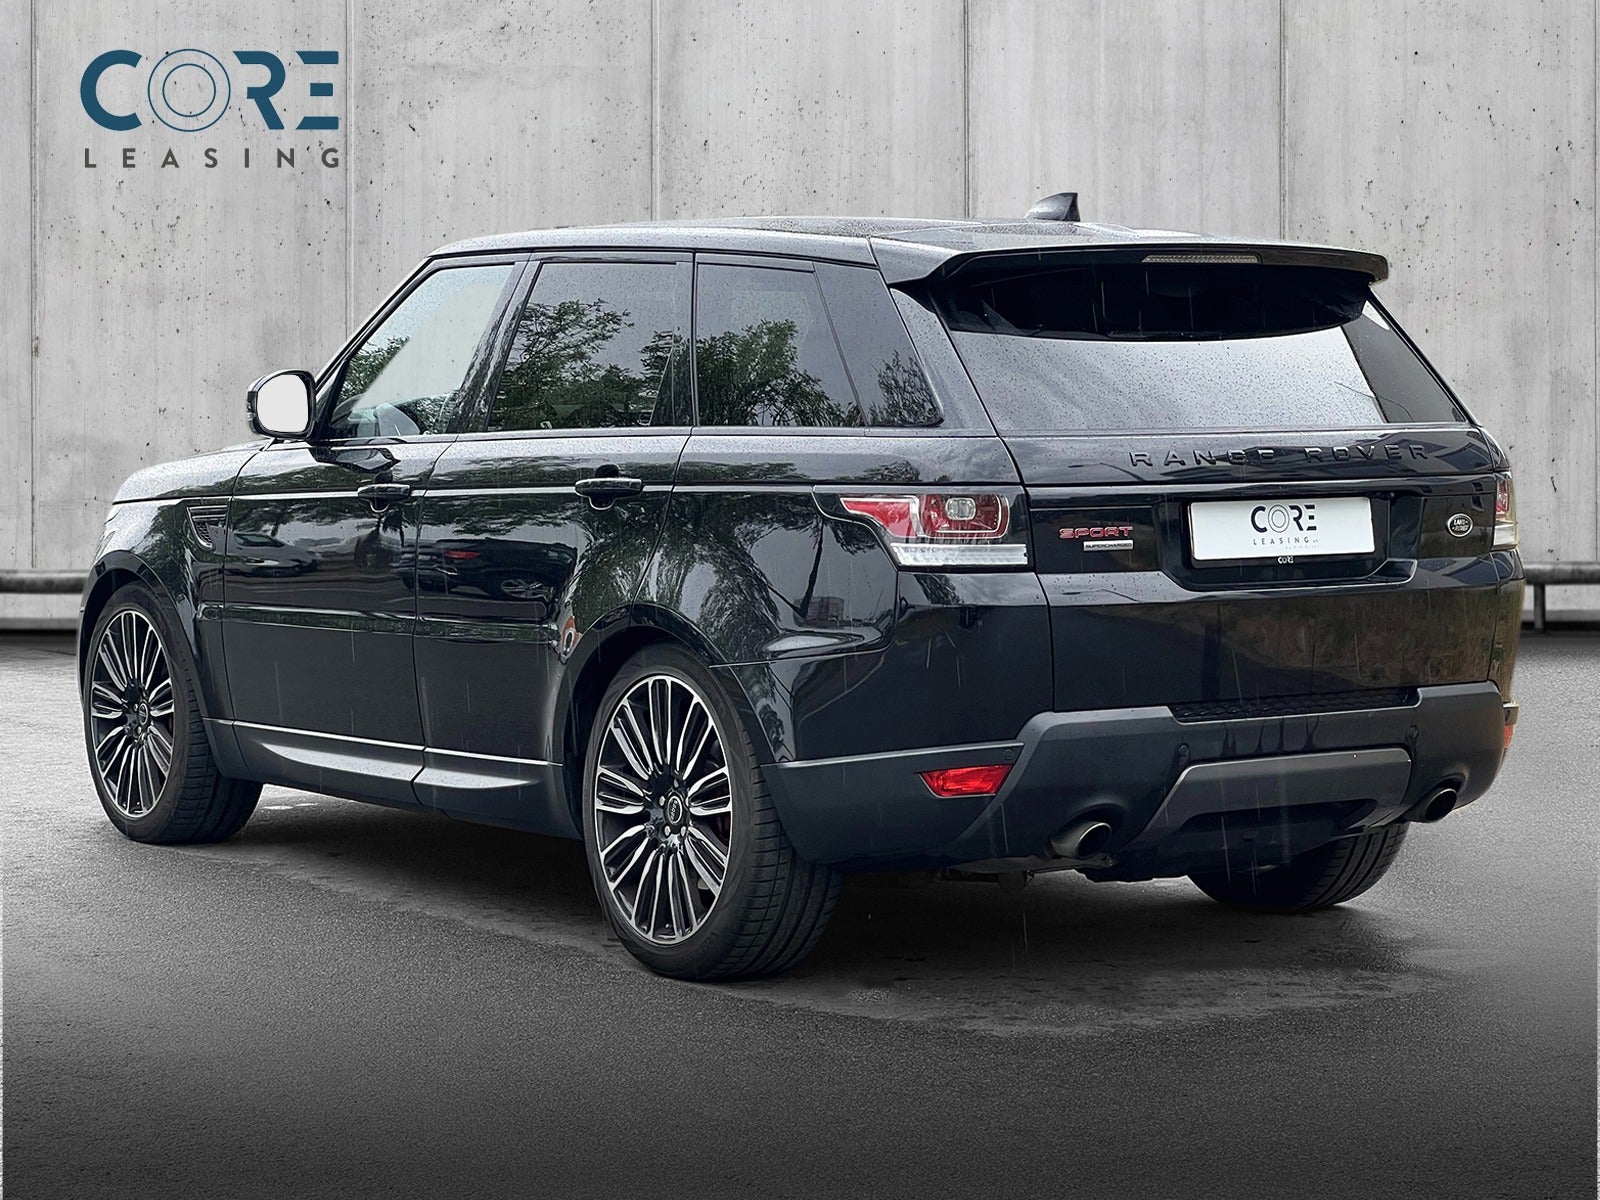 Sortmetal Land Rover Range Rover Sport SCV8 HSE Dynamic aut. fra 2017 parkeret foran en betonmur. CORE Leasing A/S er eksperter i Land Rover leasing.